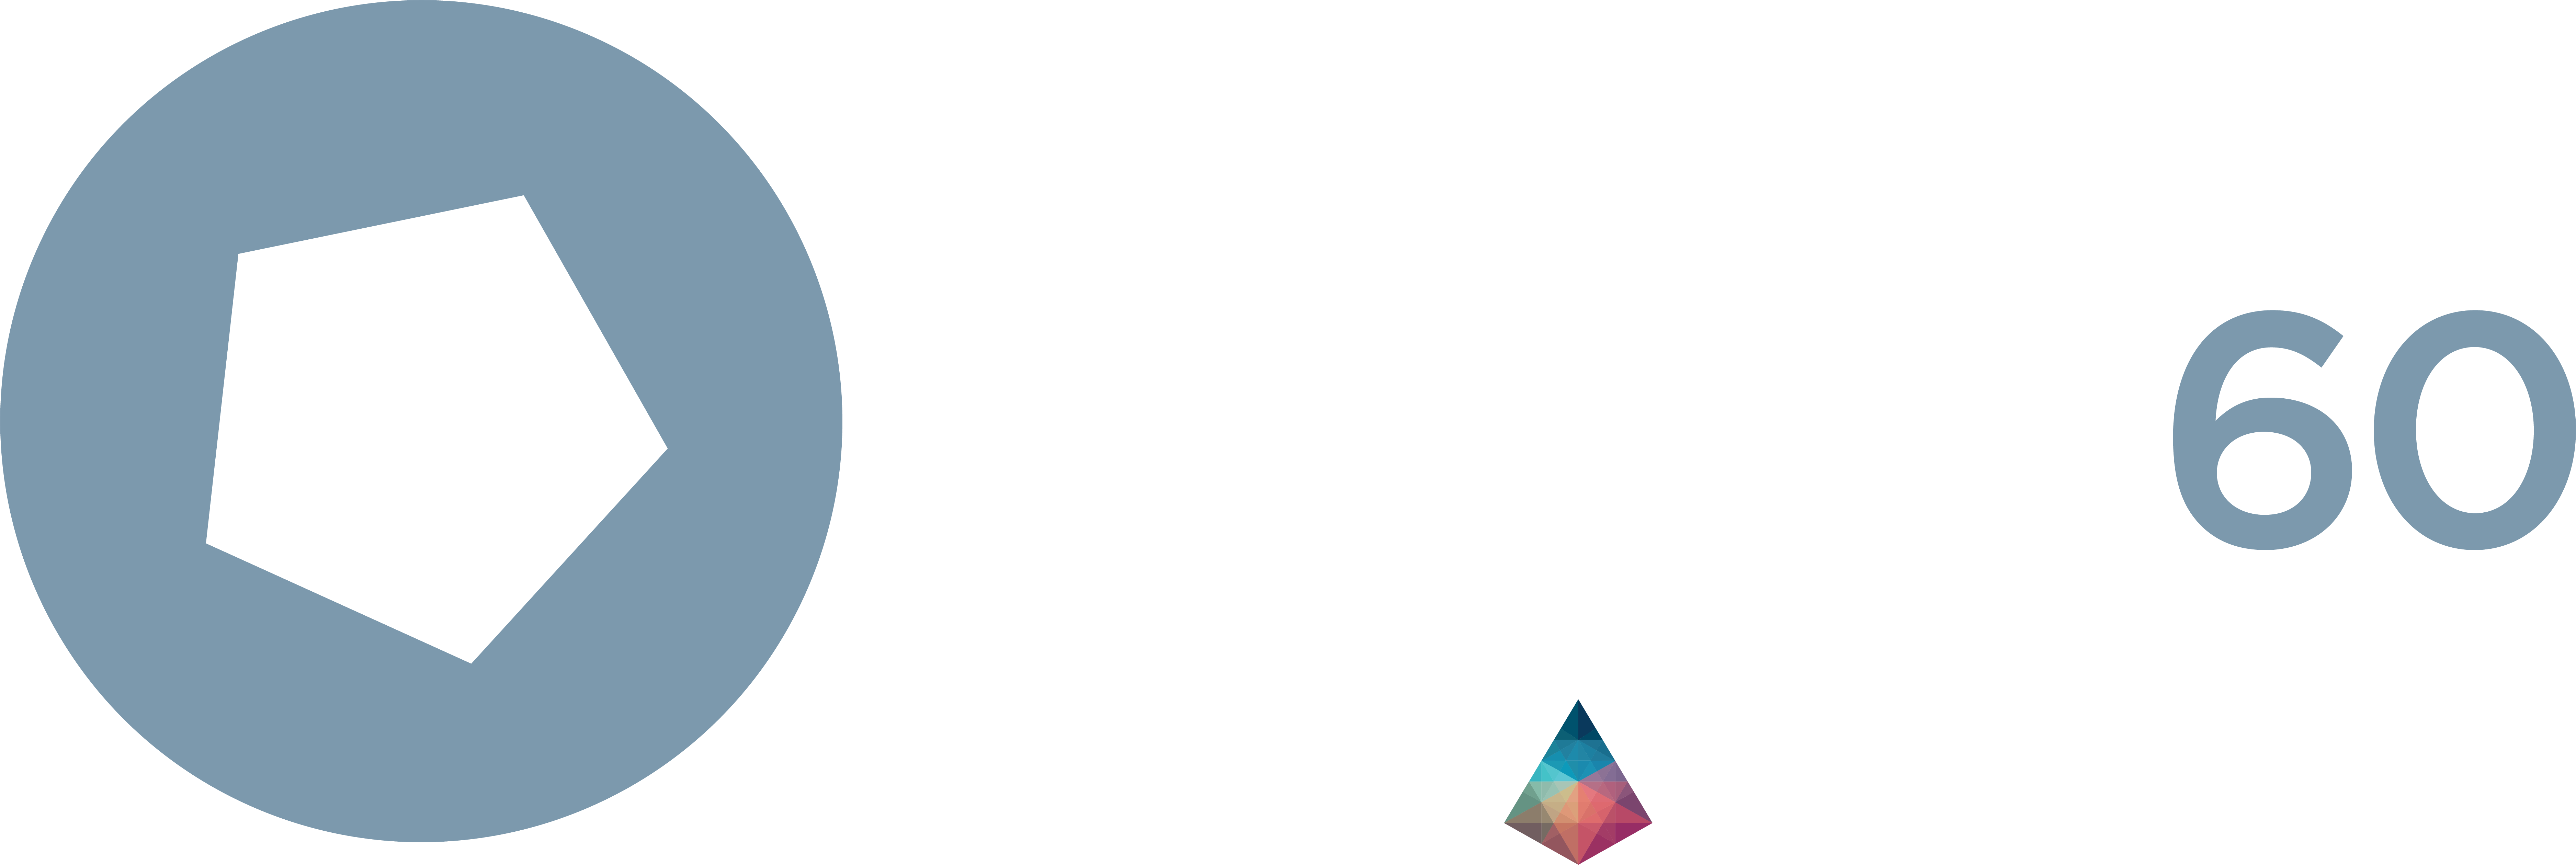 Carbon60